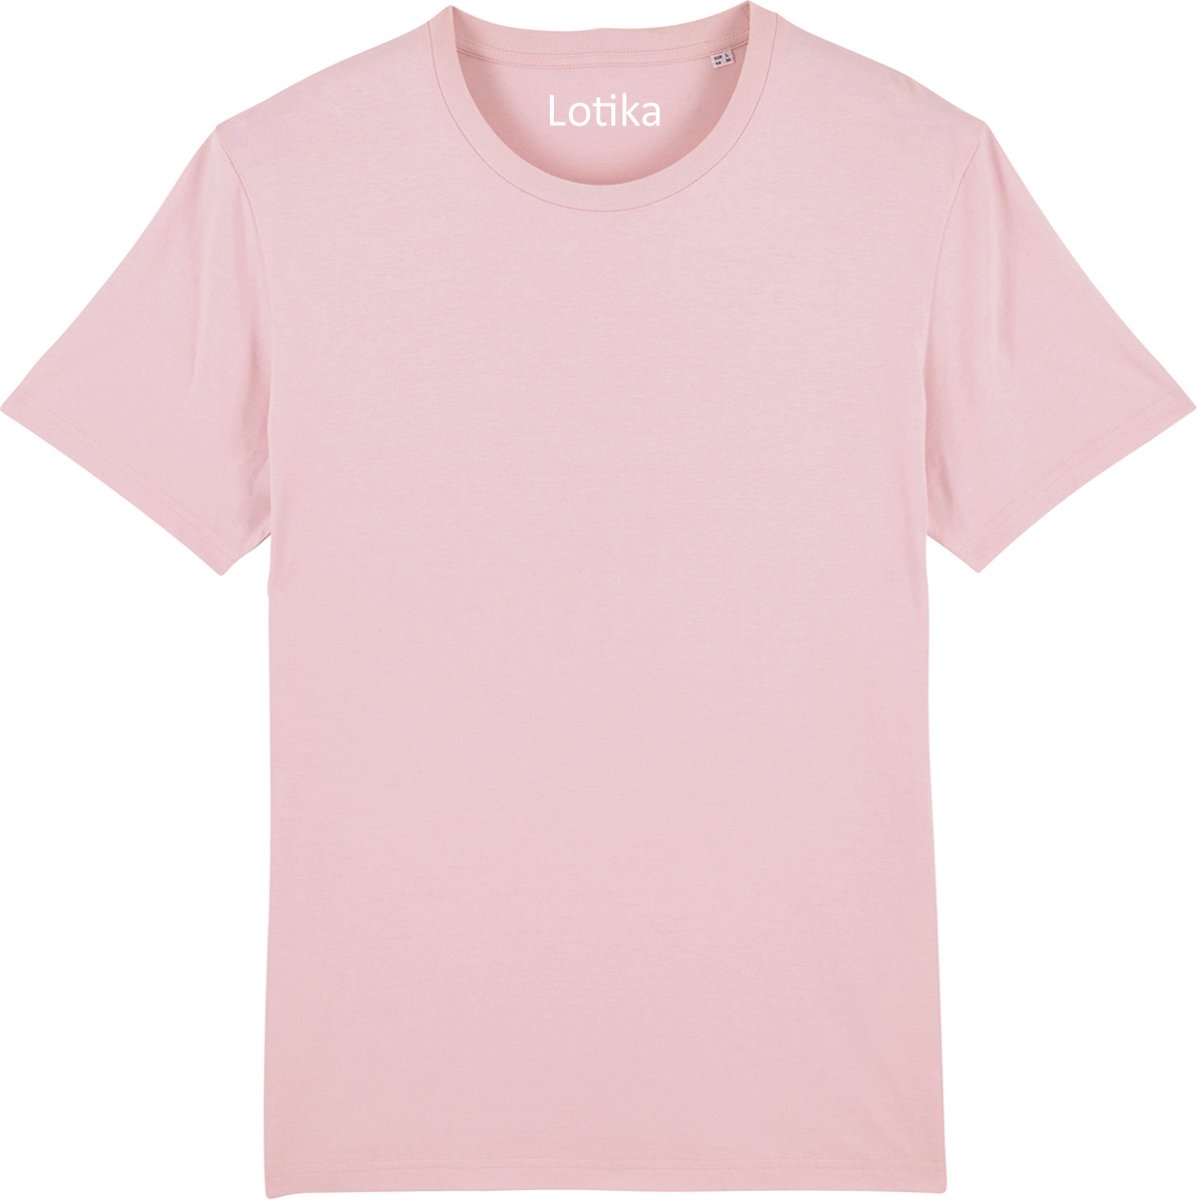 Lotika Daan T-shirt biologisch katoen roze